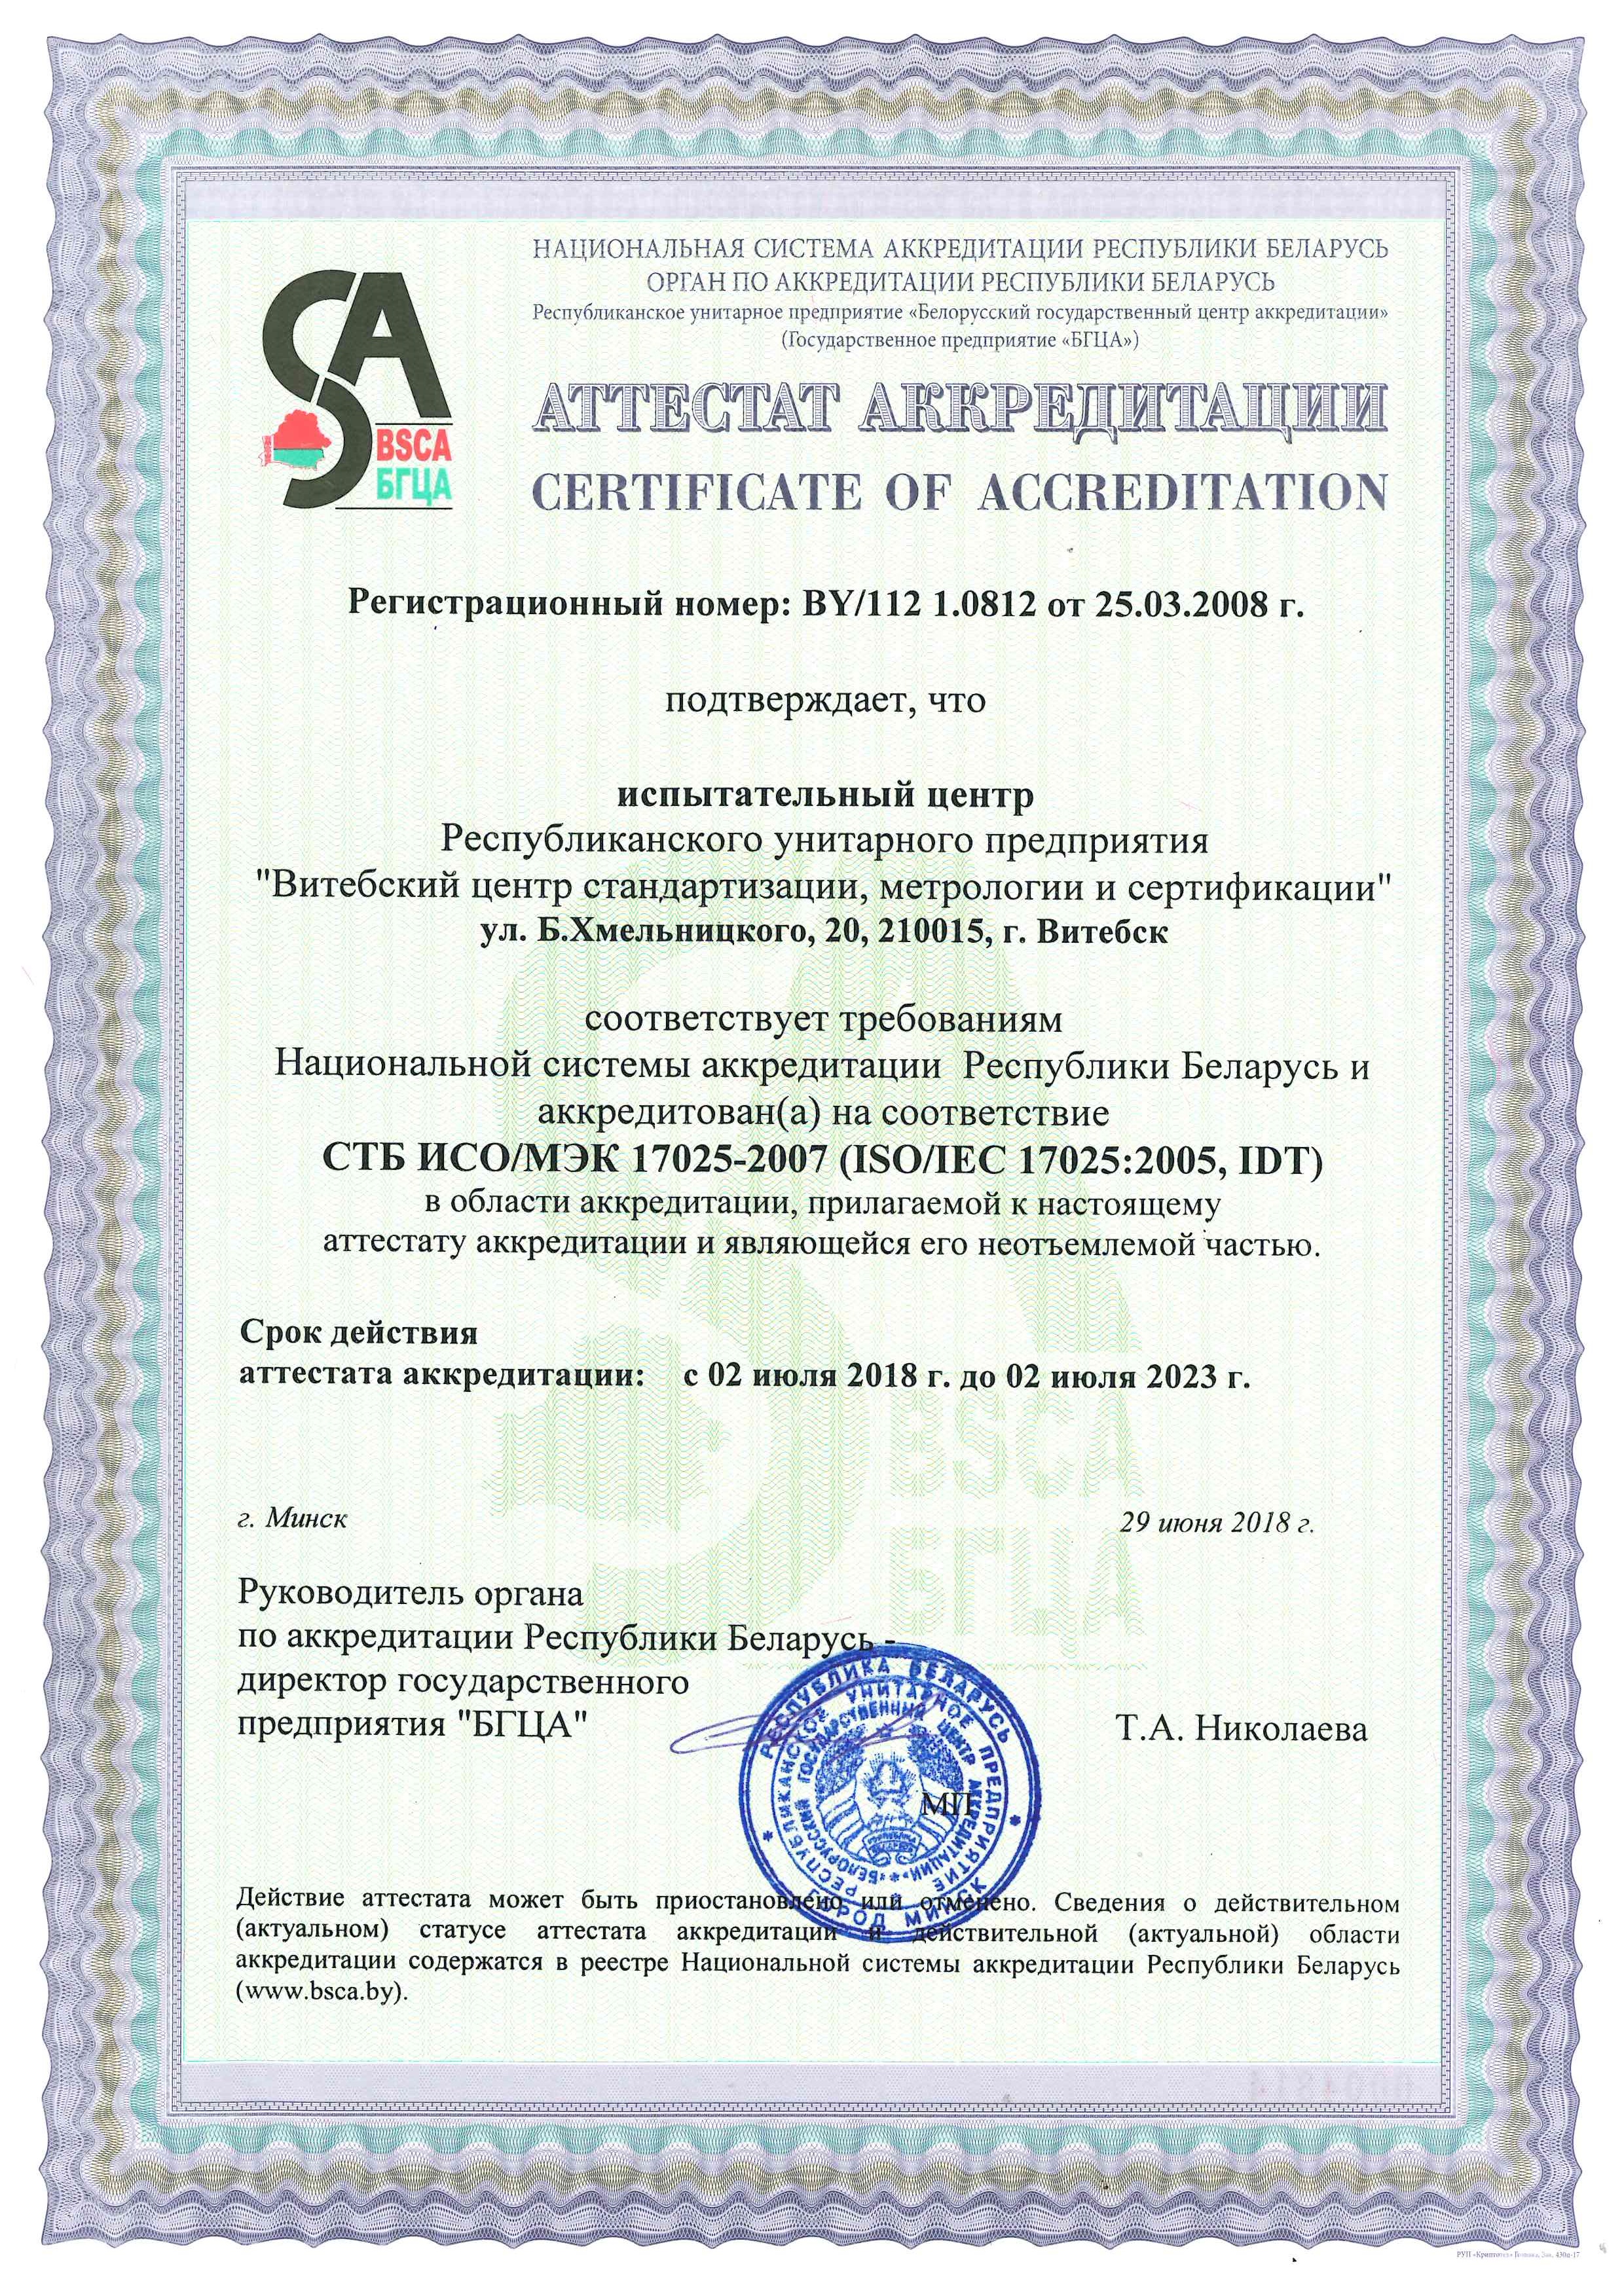 Аттестат аккредитации № BY/112 1.0812 от 25.03.2008